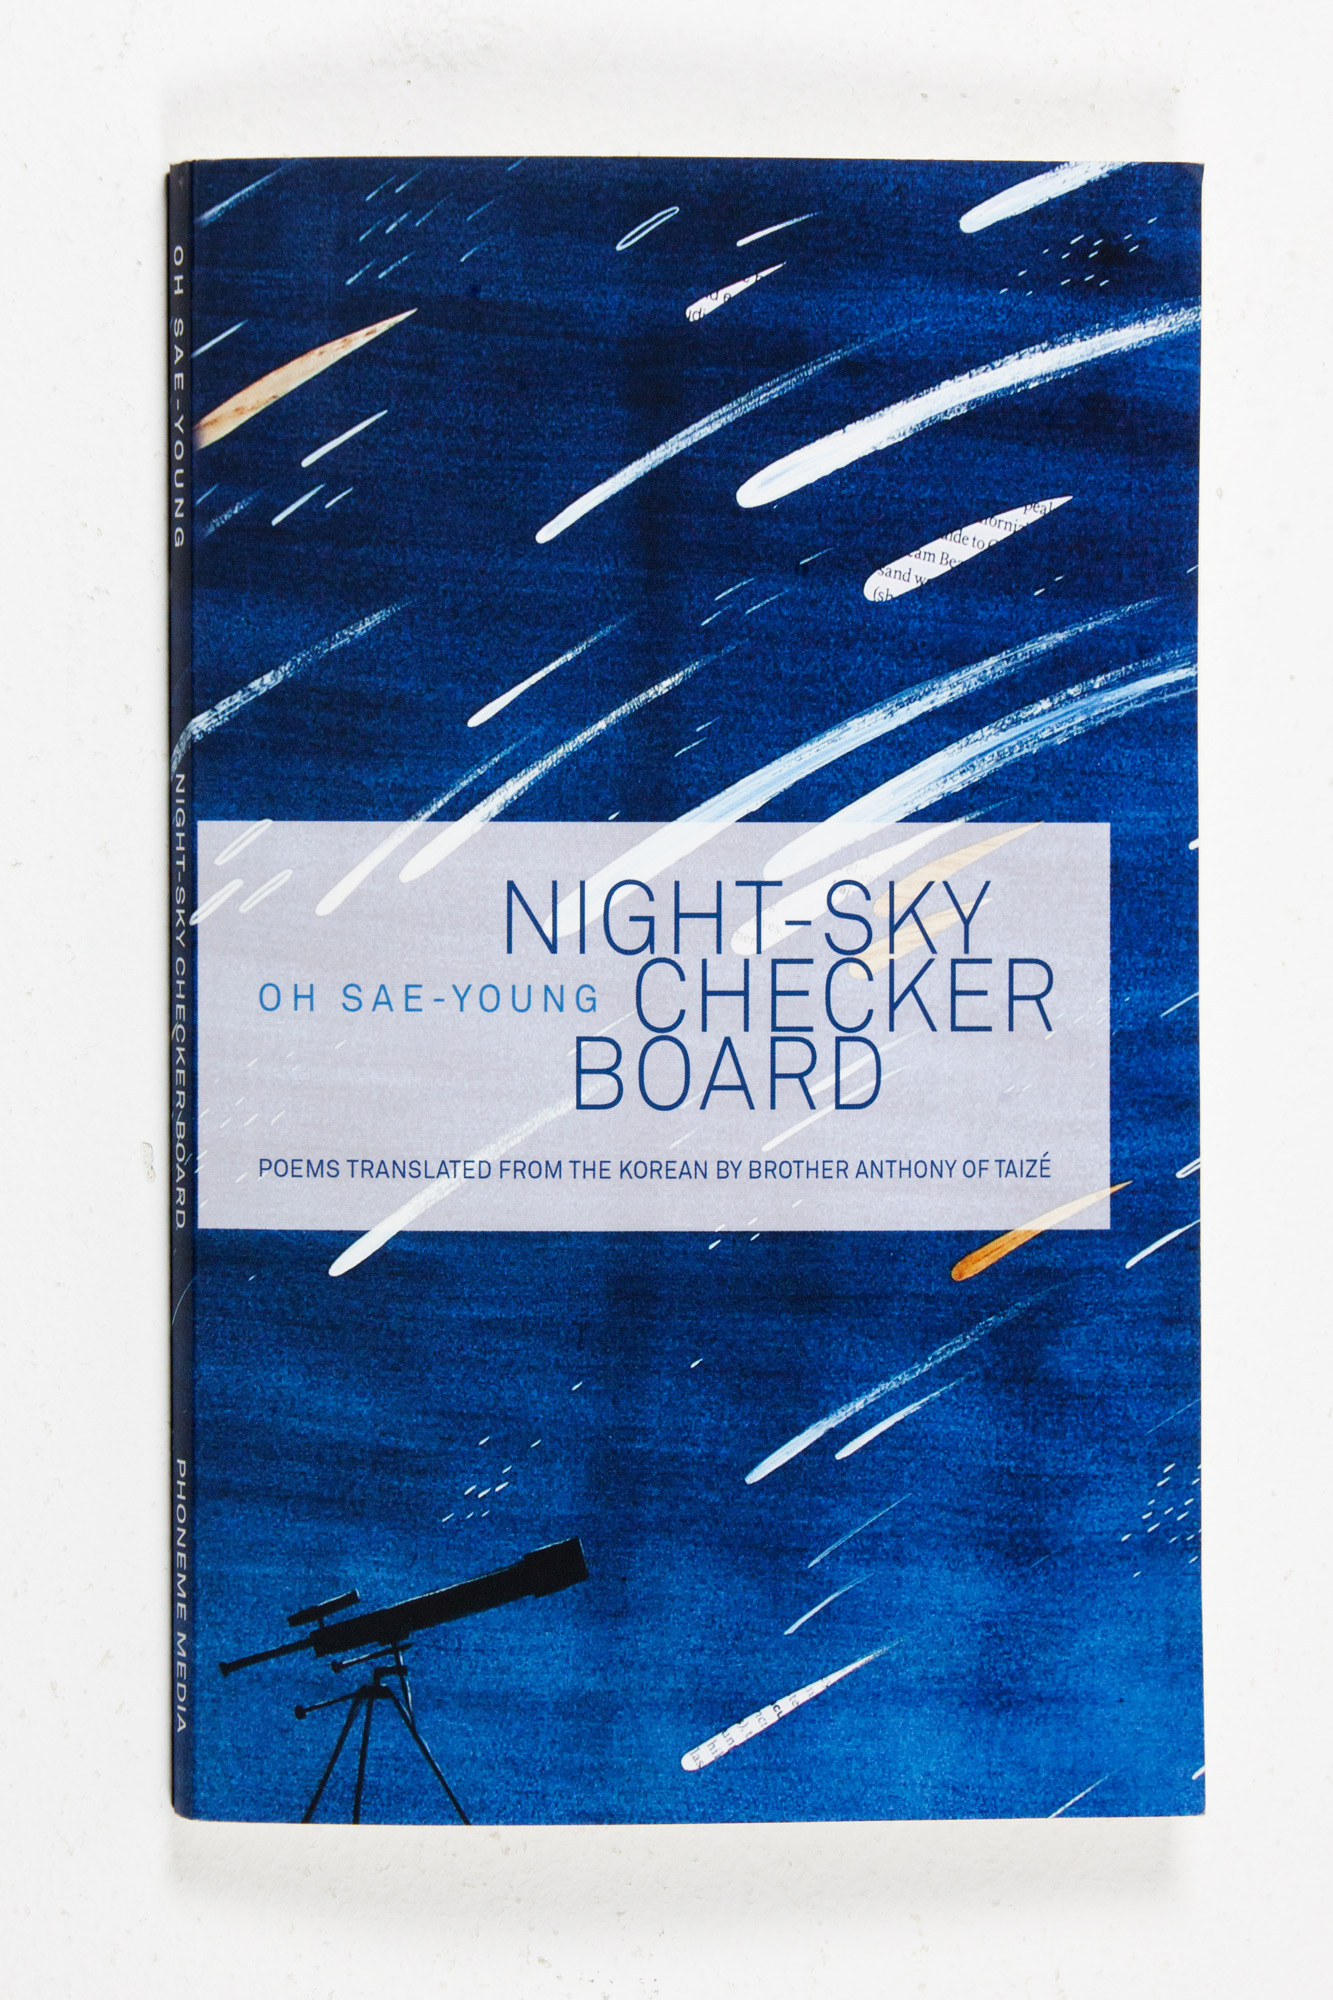 오세영;시집;밤하늘의바둑판;Night-SkyCheckerboard